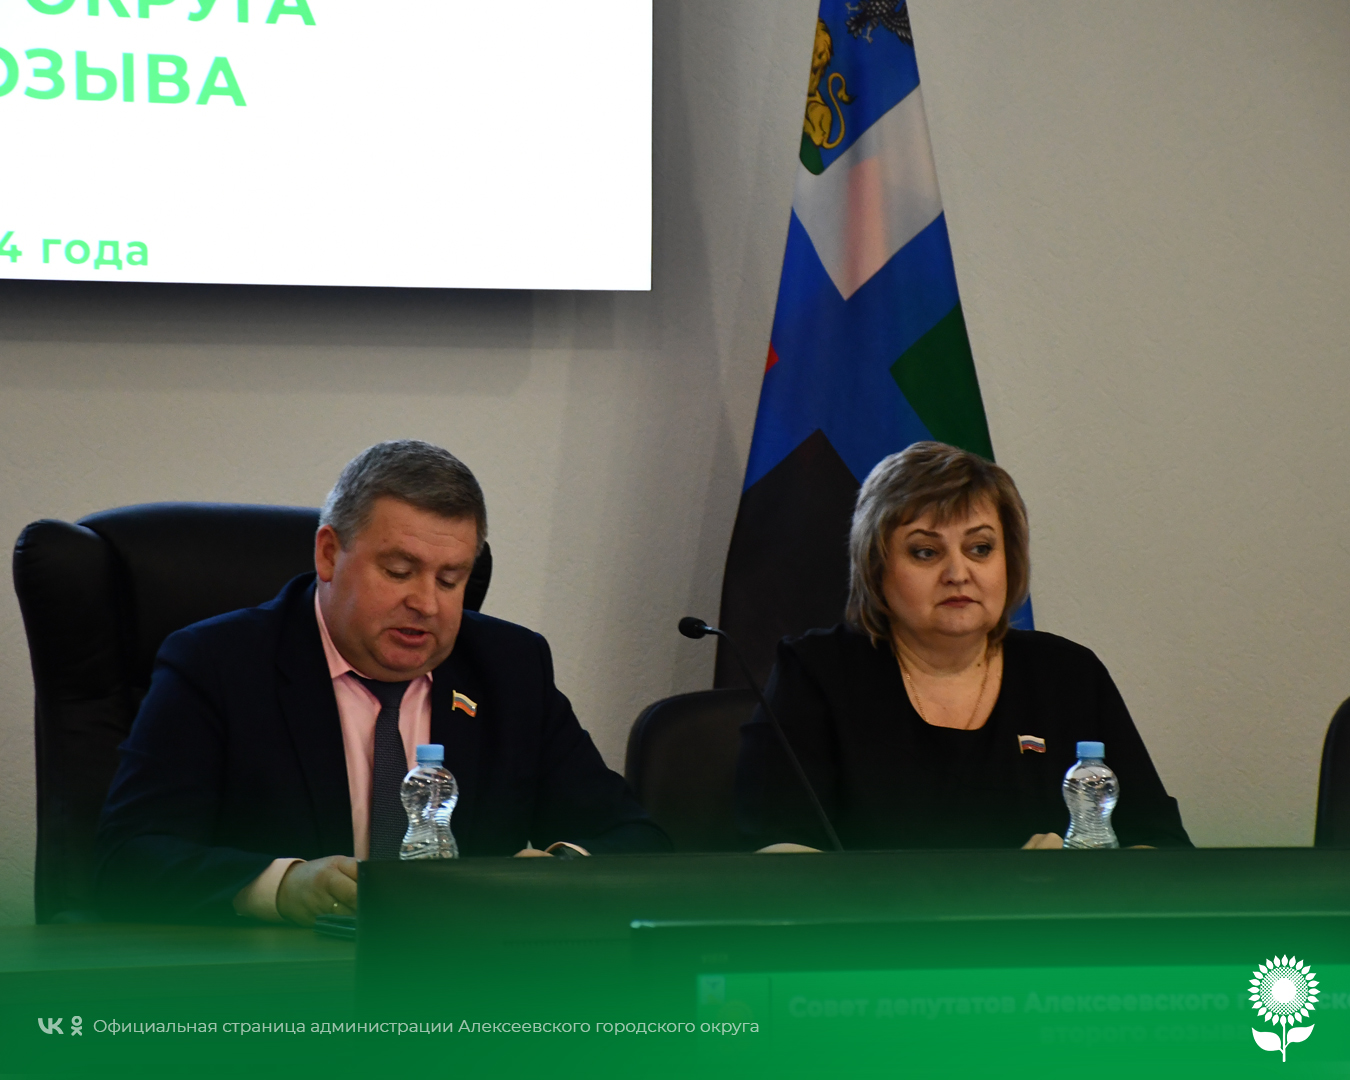 Сегодня состоялось пятое внеочередное заседание Совета депутатов Алексеевского городского округа второго созыва.